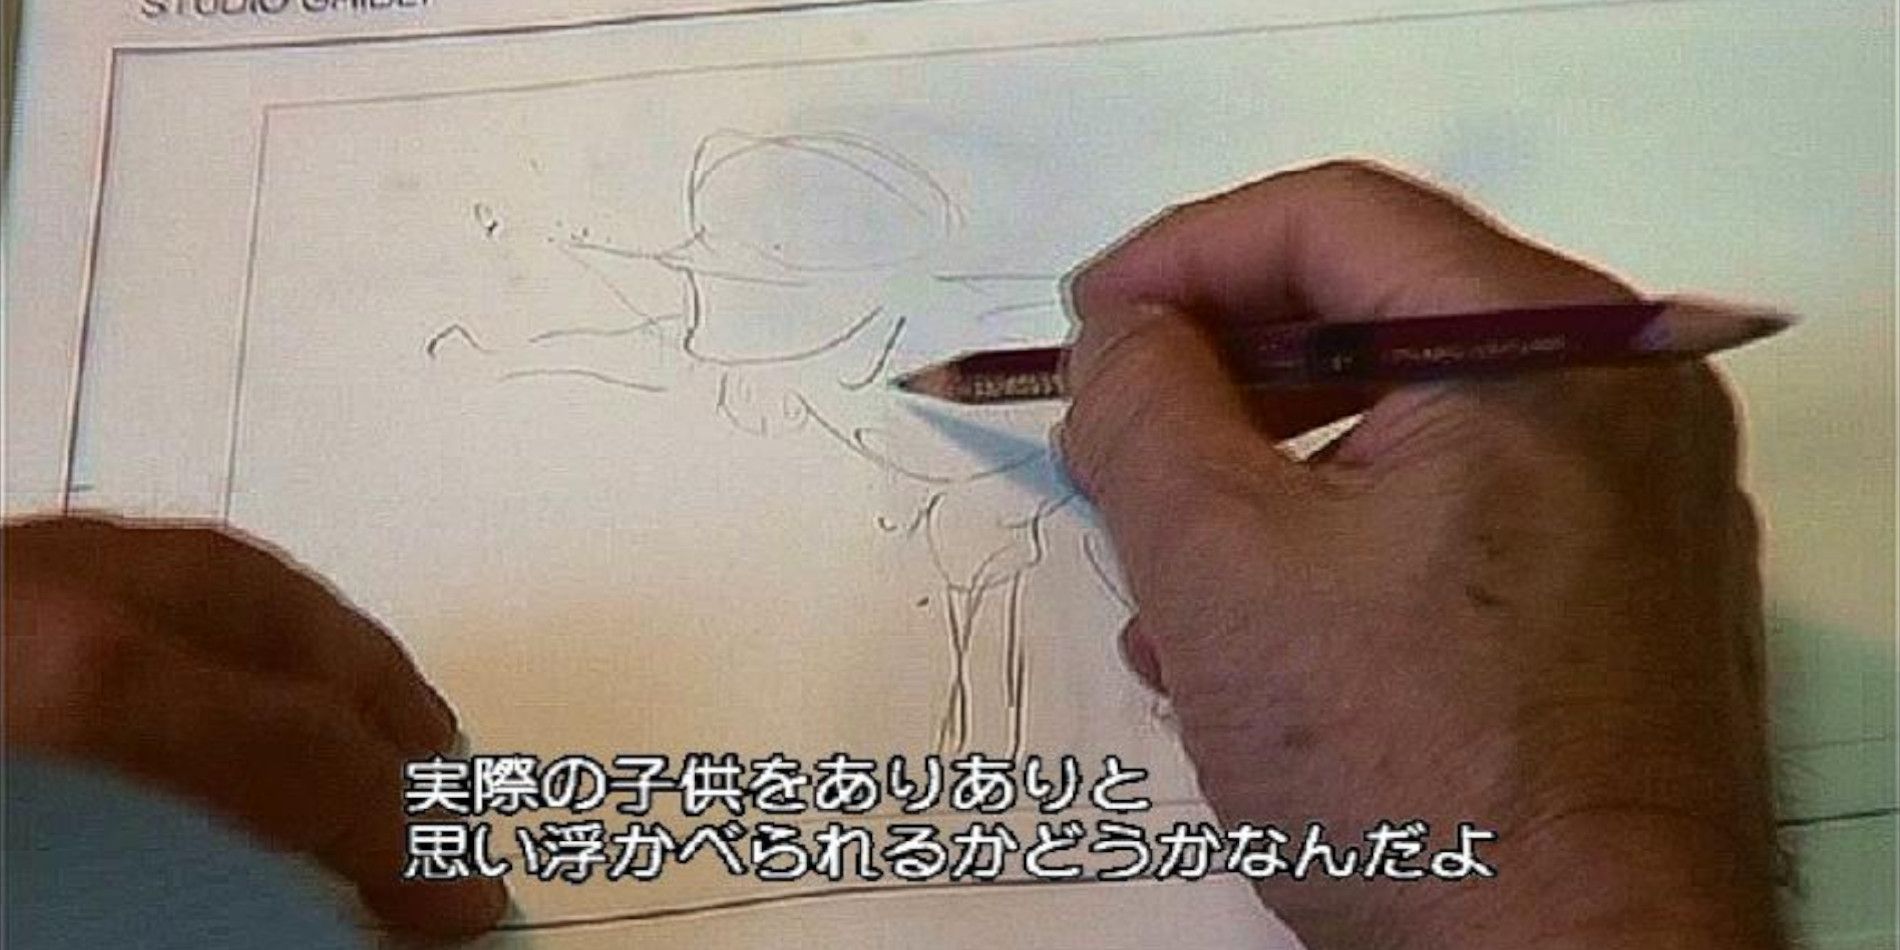 Успех студии Ghibli меньше связан с Хаяо Миядзаки, чем думают фанаты